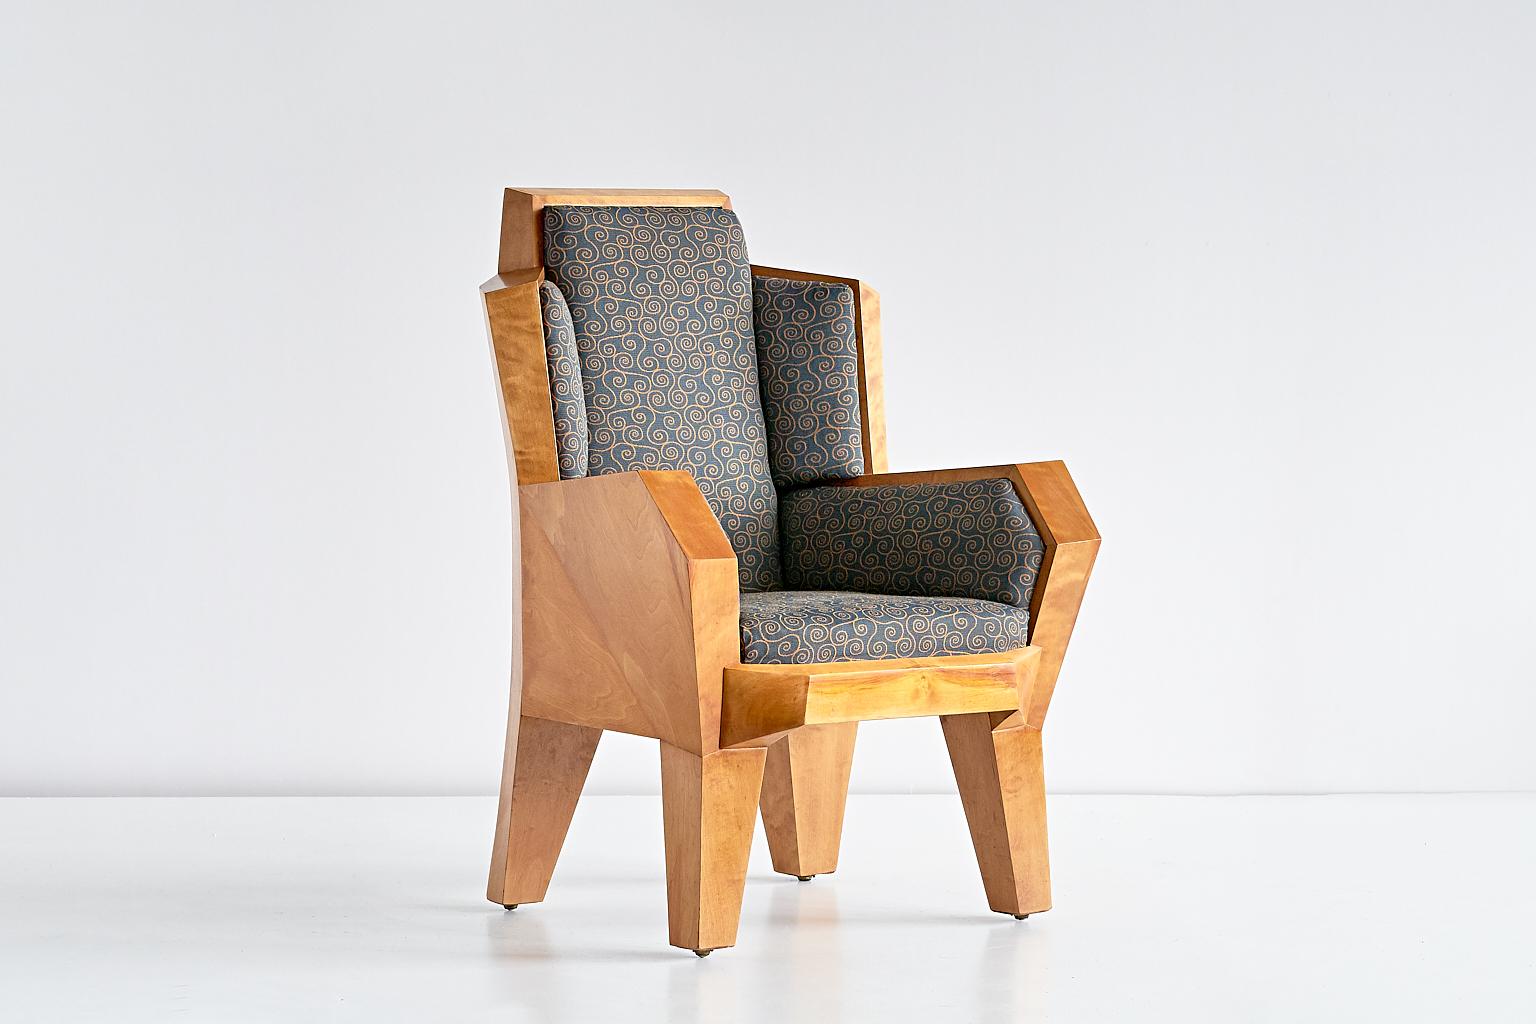 Ce fauteuil unique a été conçu en 1928 par Camillo Cerri spécifiquement pour l'intérieur de la Haus Reinbach à Stuttgart en Allemagne. La chaise a été produite à Dornach, en Suisse, par August Tobler qui a exécuté à la main la plupart des dessins de